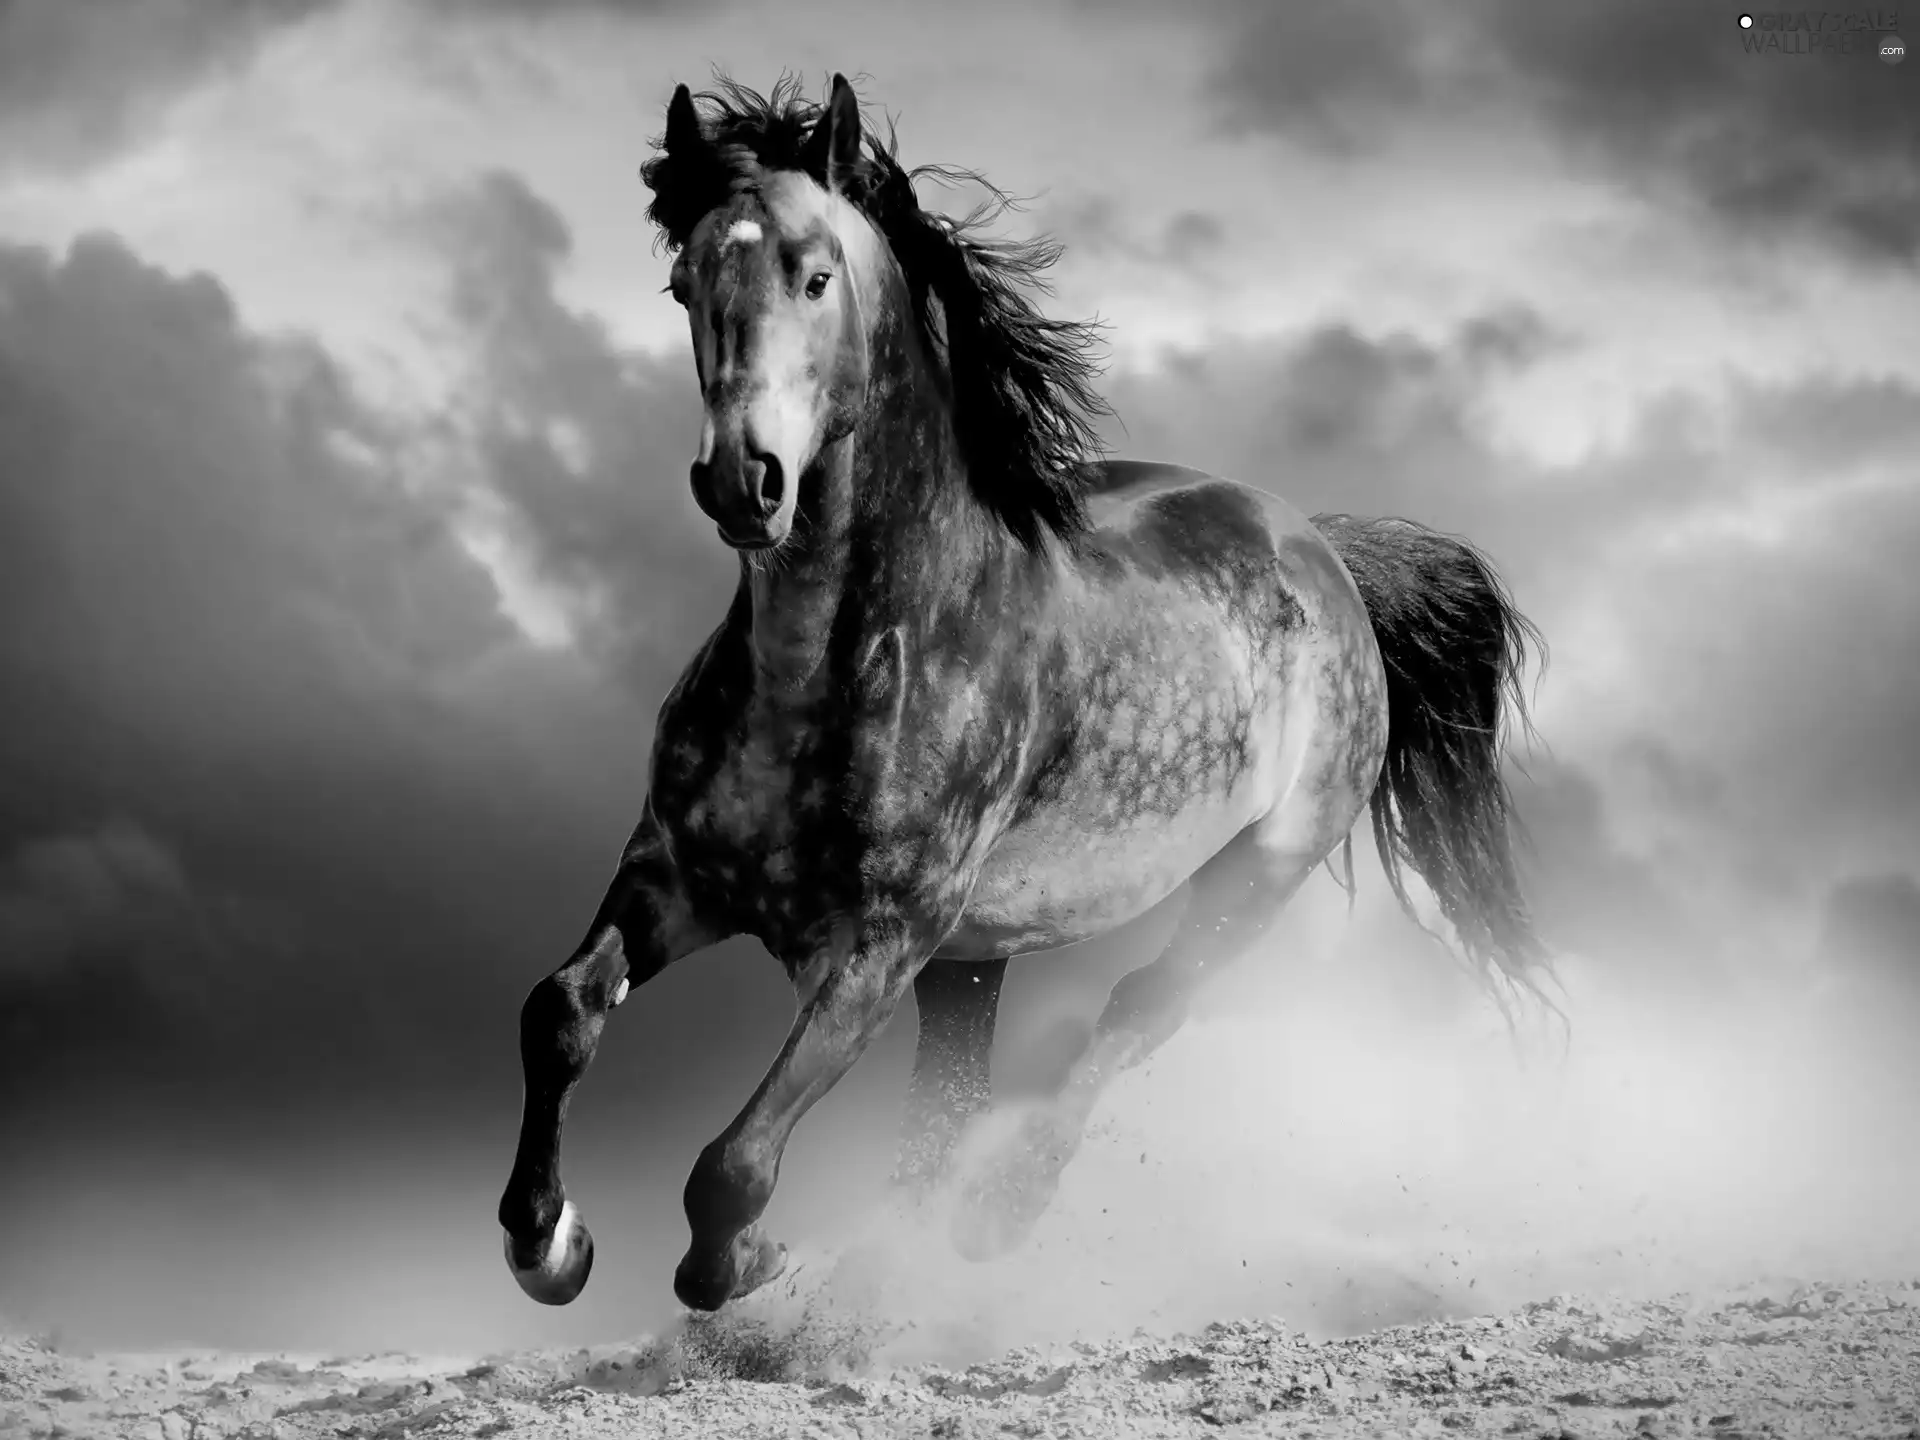 clouds, Horse, gallop